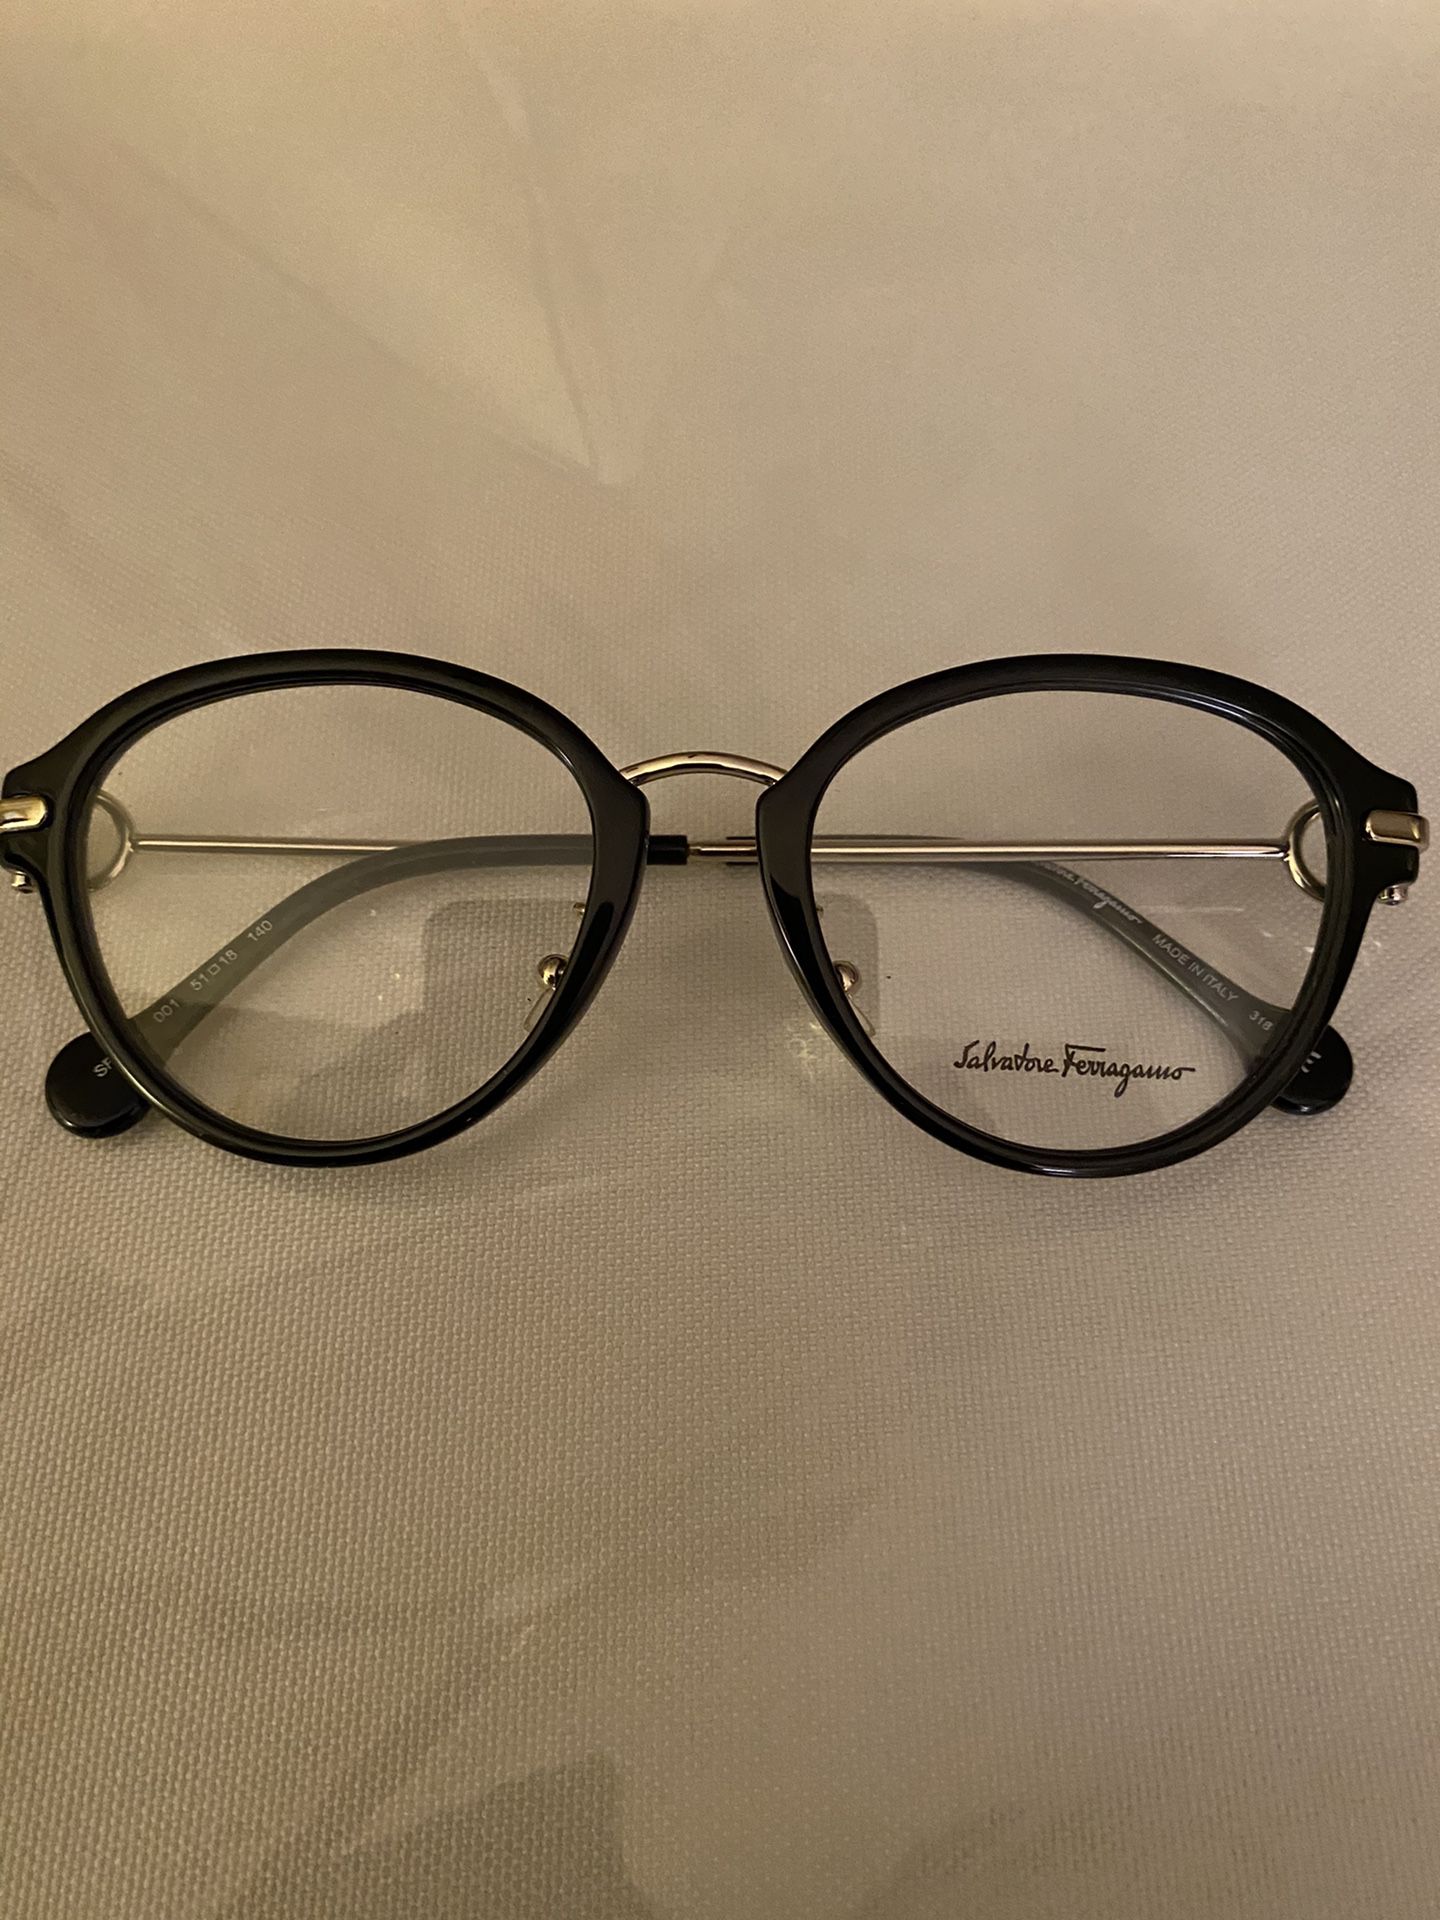 Salvatore Ferragamo brand new glasses